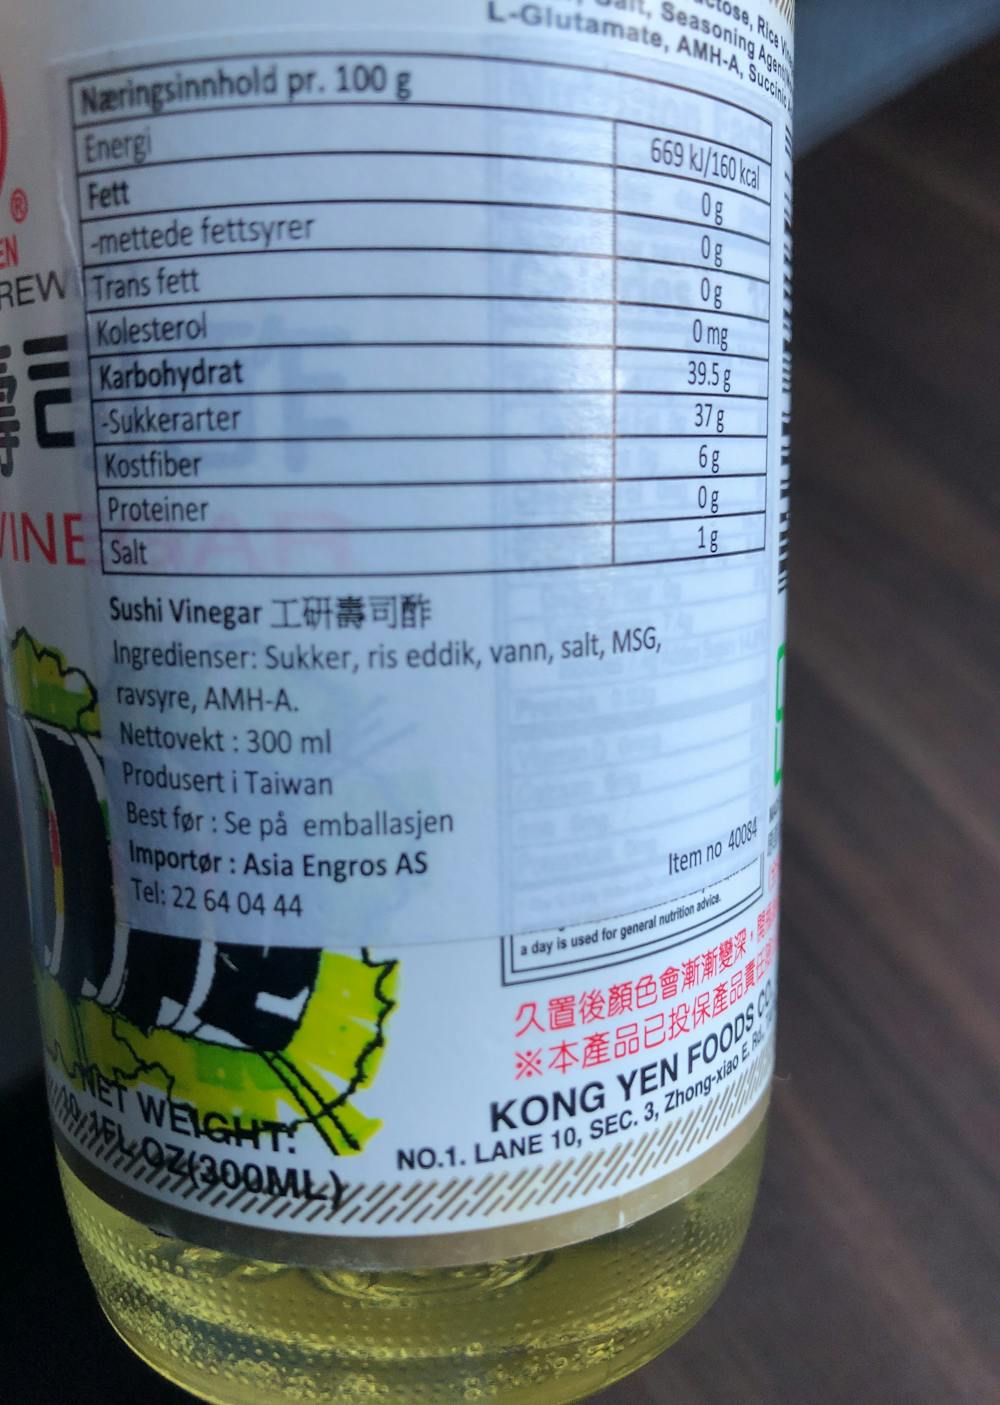 Ingredienslisten til Kong yen Sushi vinegar